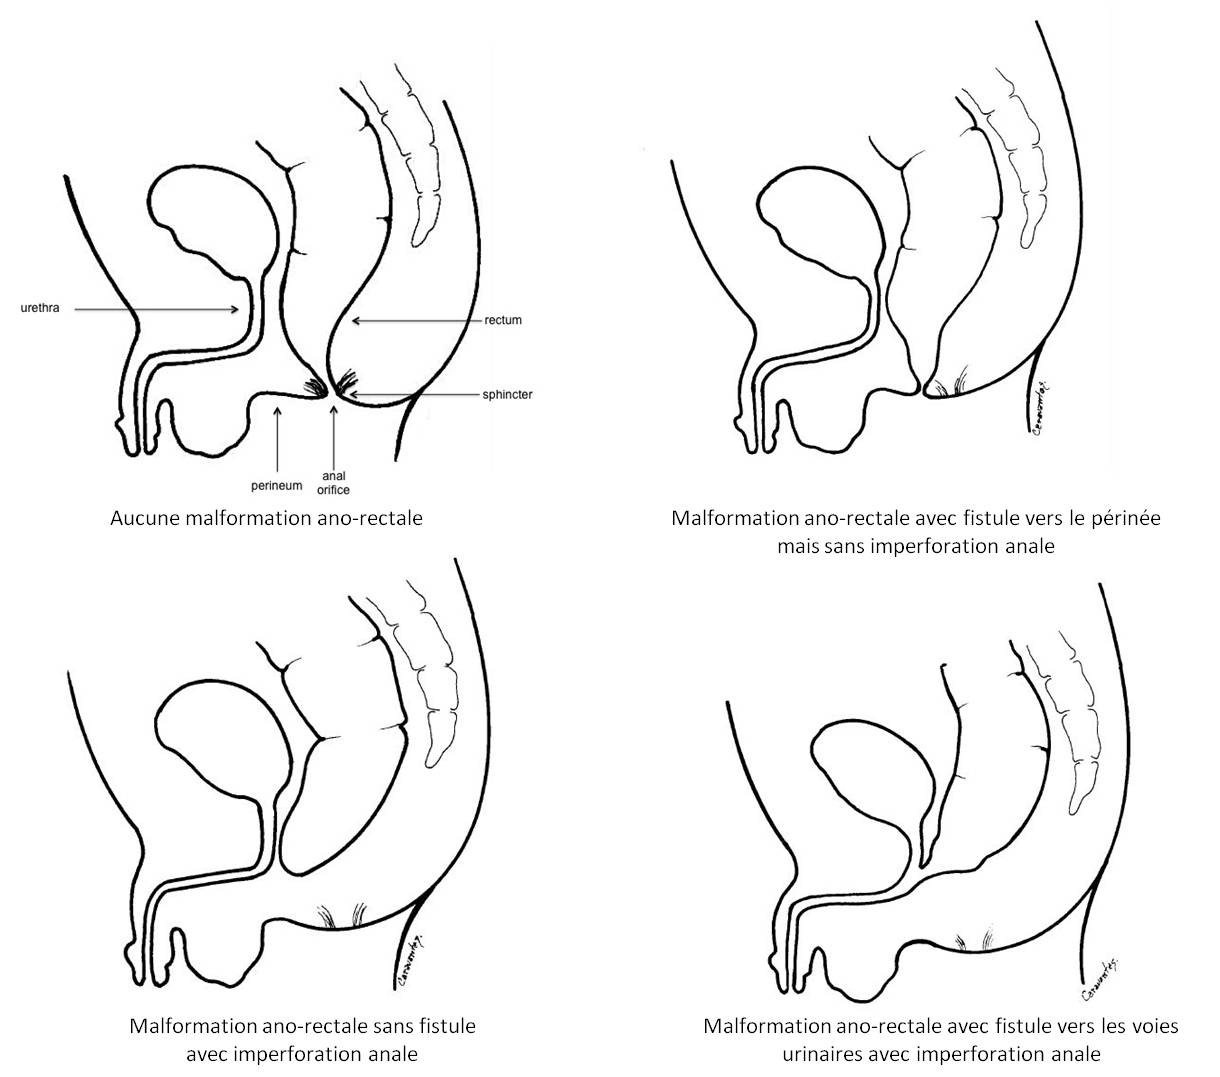 Illustrations des formes de malformations ano-rectales dont l'imperforation anale, chez le garçon 